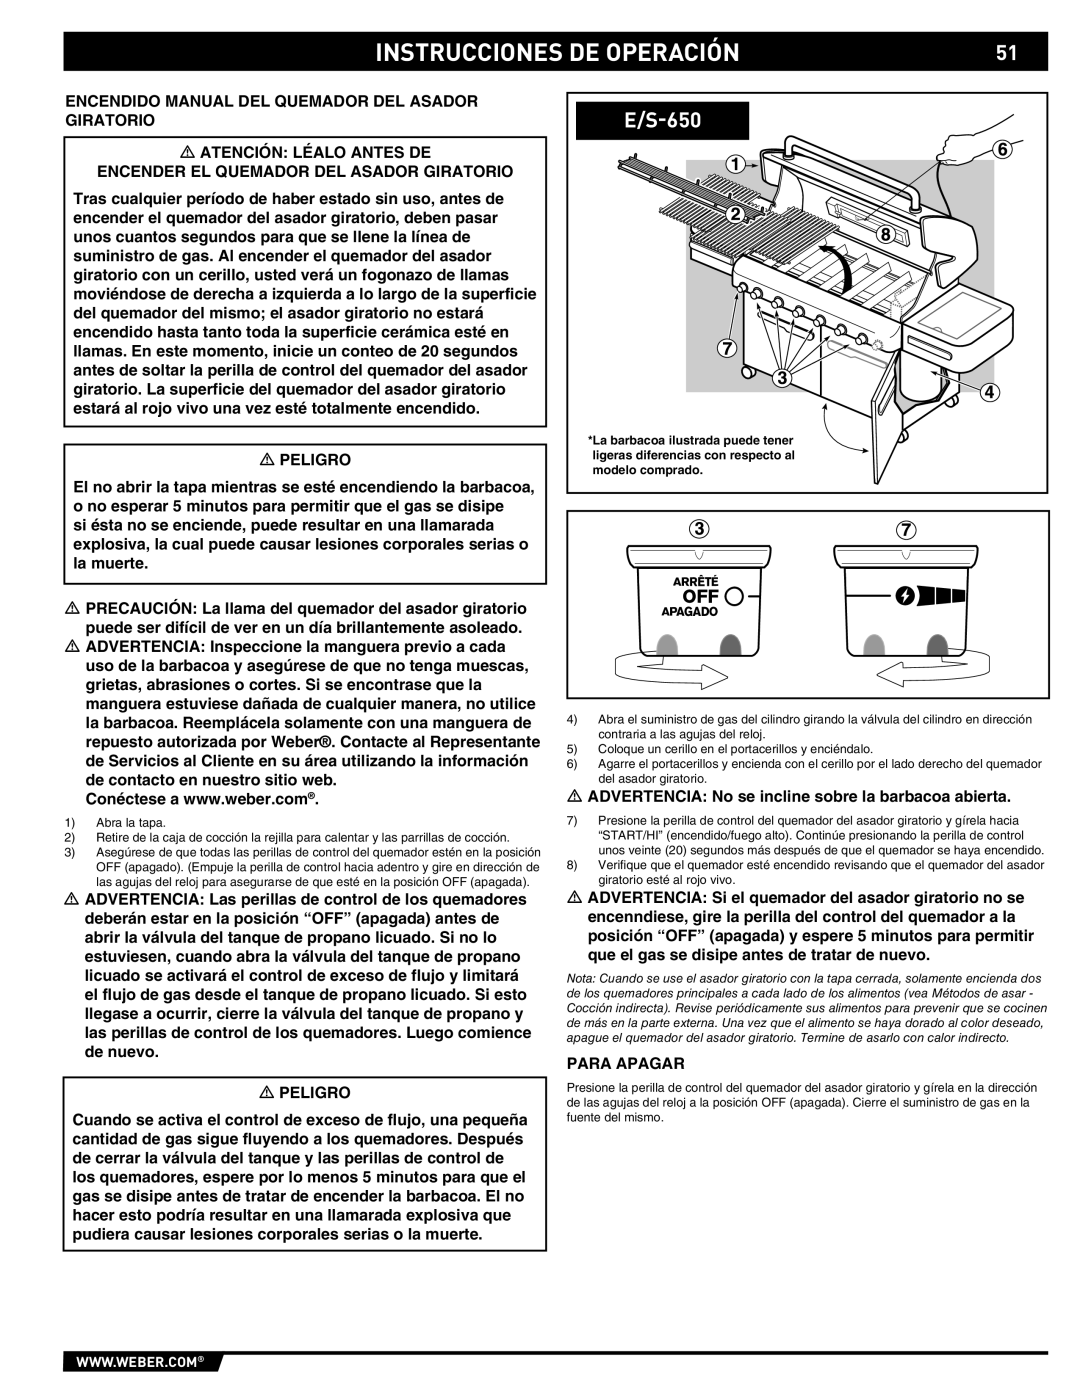 Summit E/S-620/650 manual Instrucciones DE Operación 